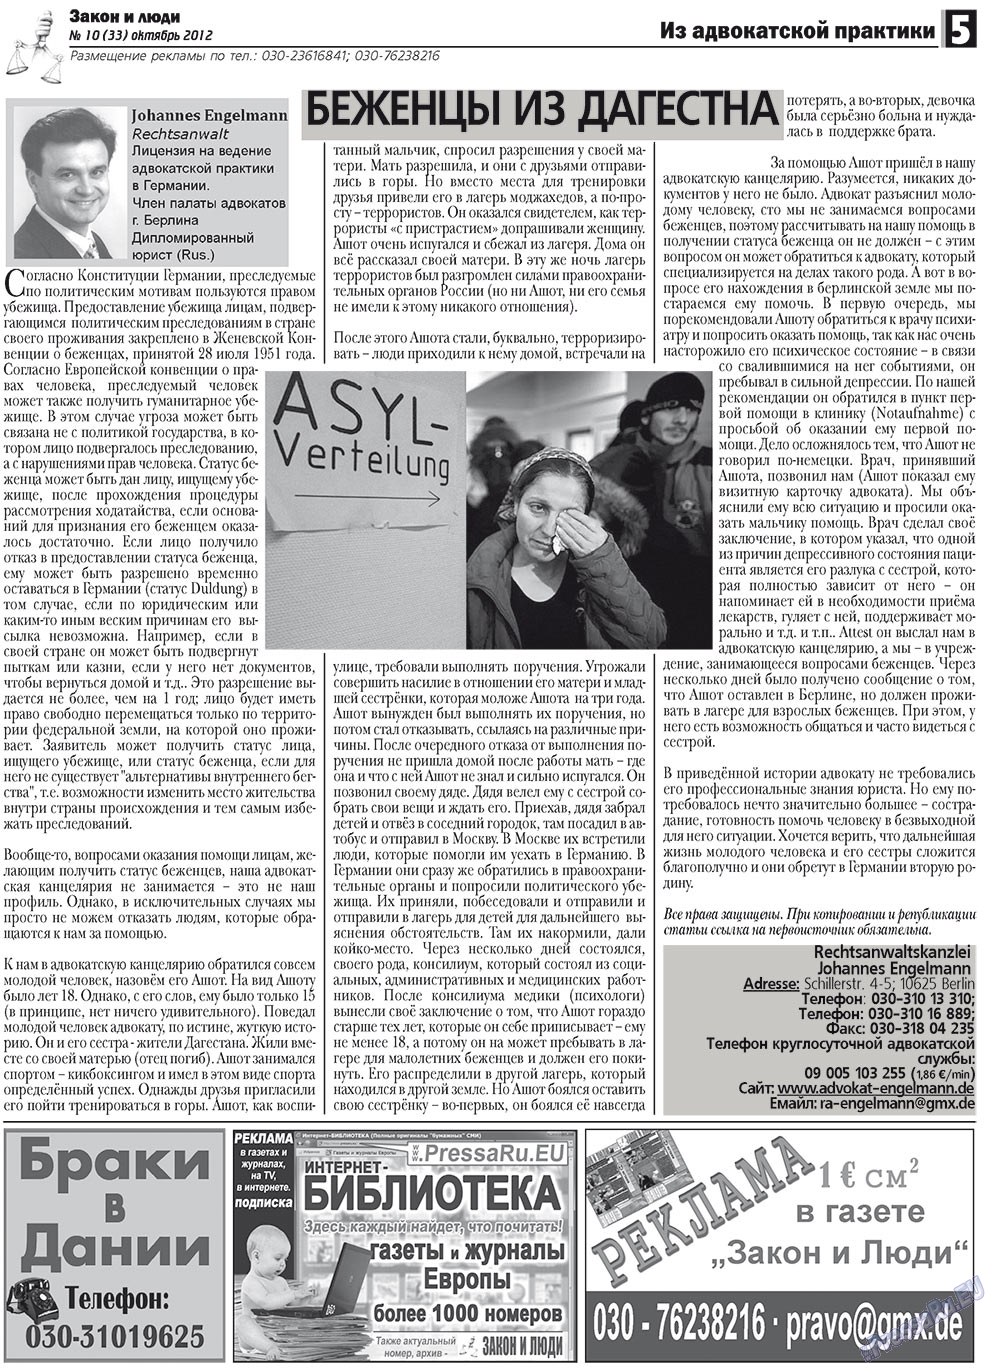 Закон и люди, газета. 2012 №10 стр.5